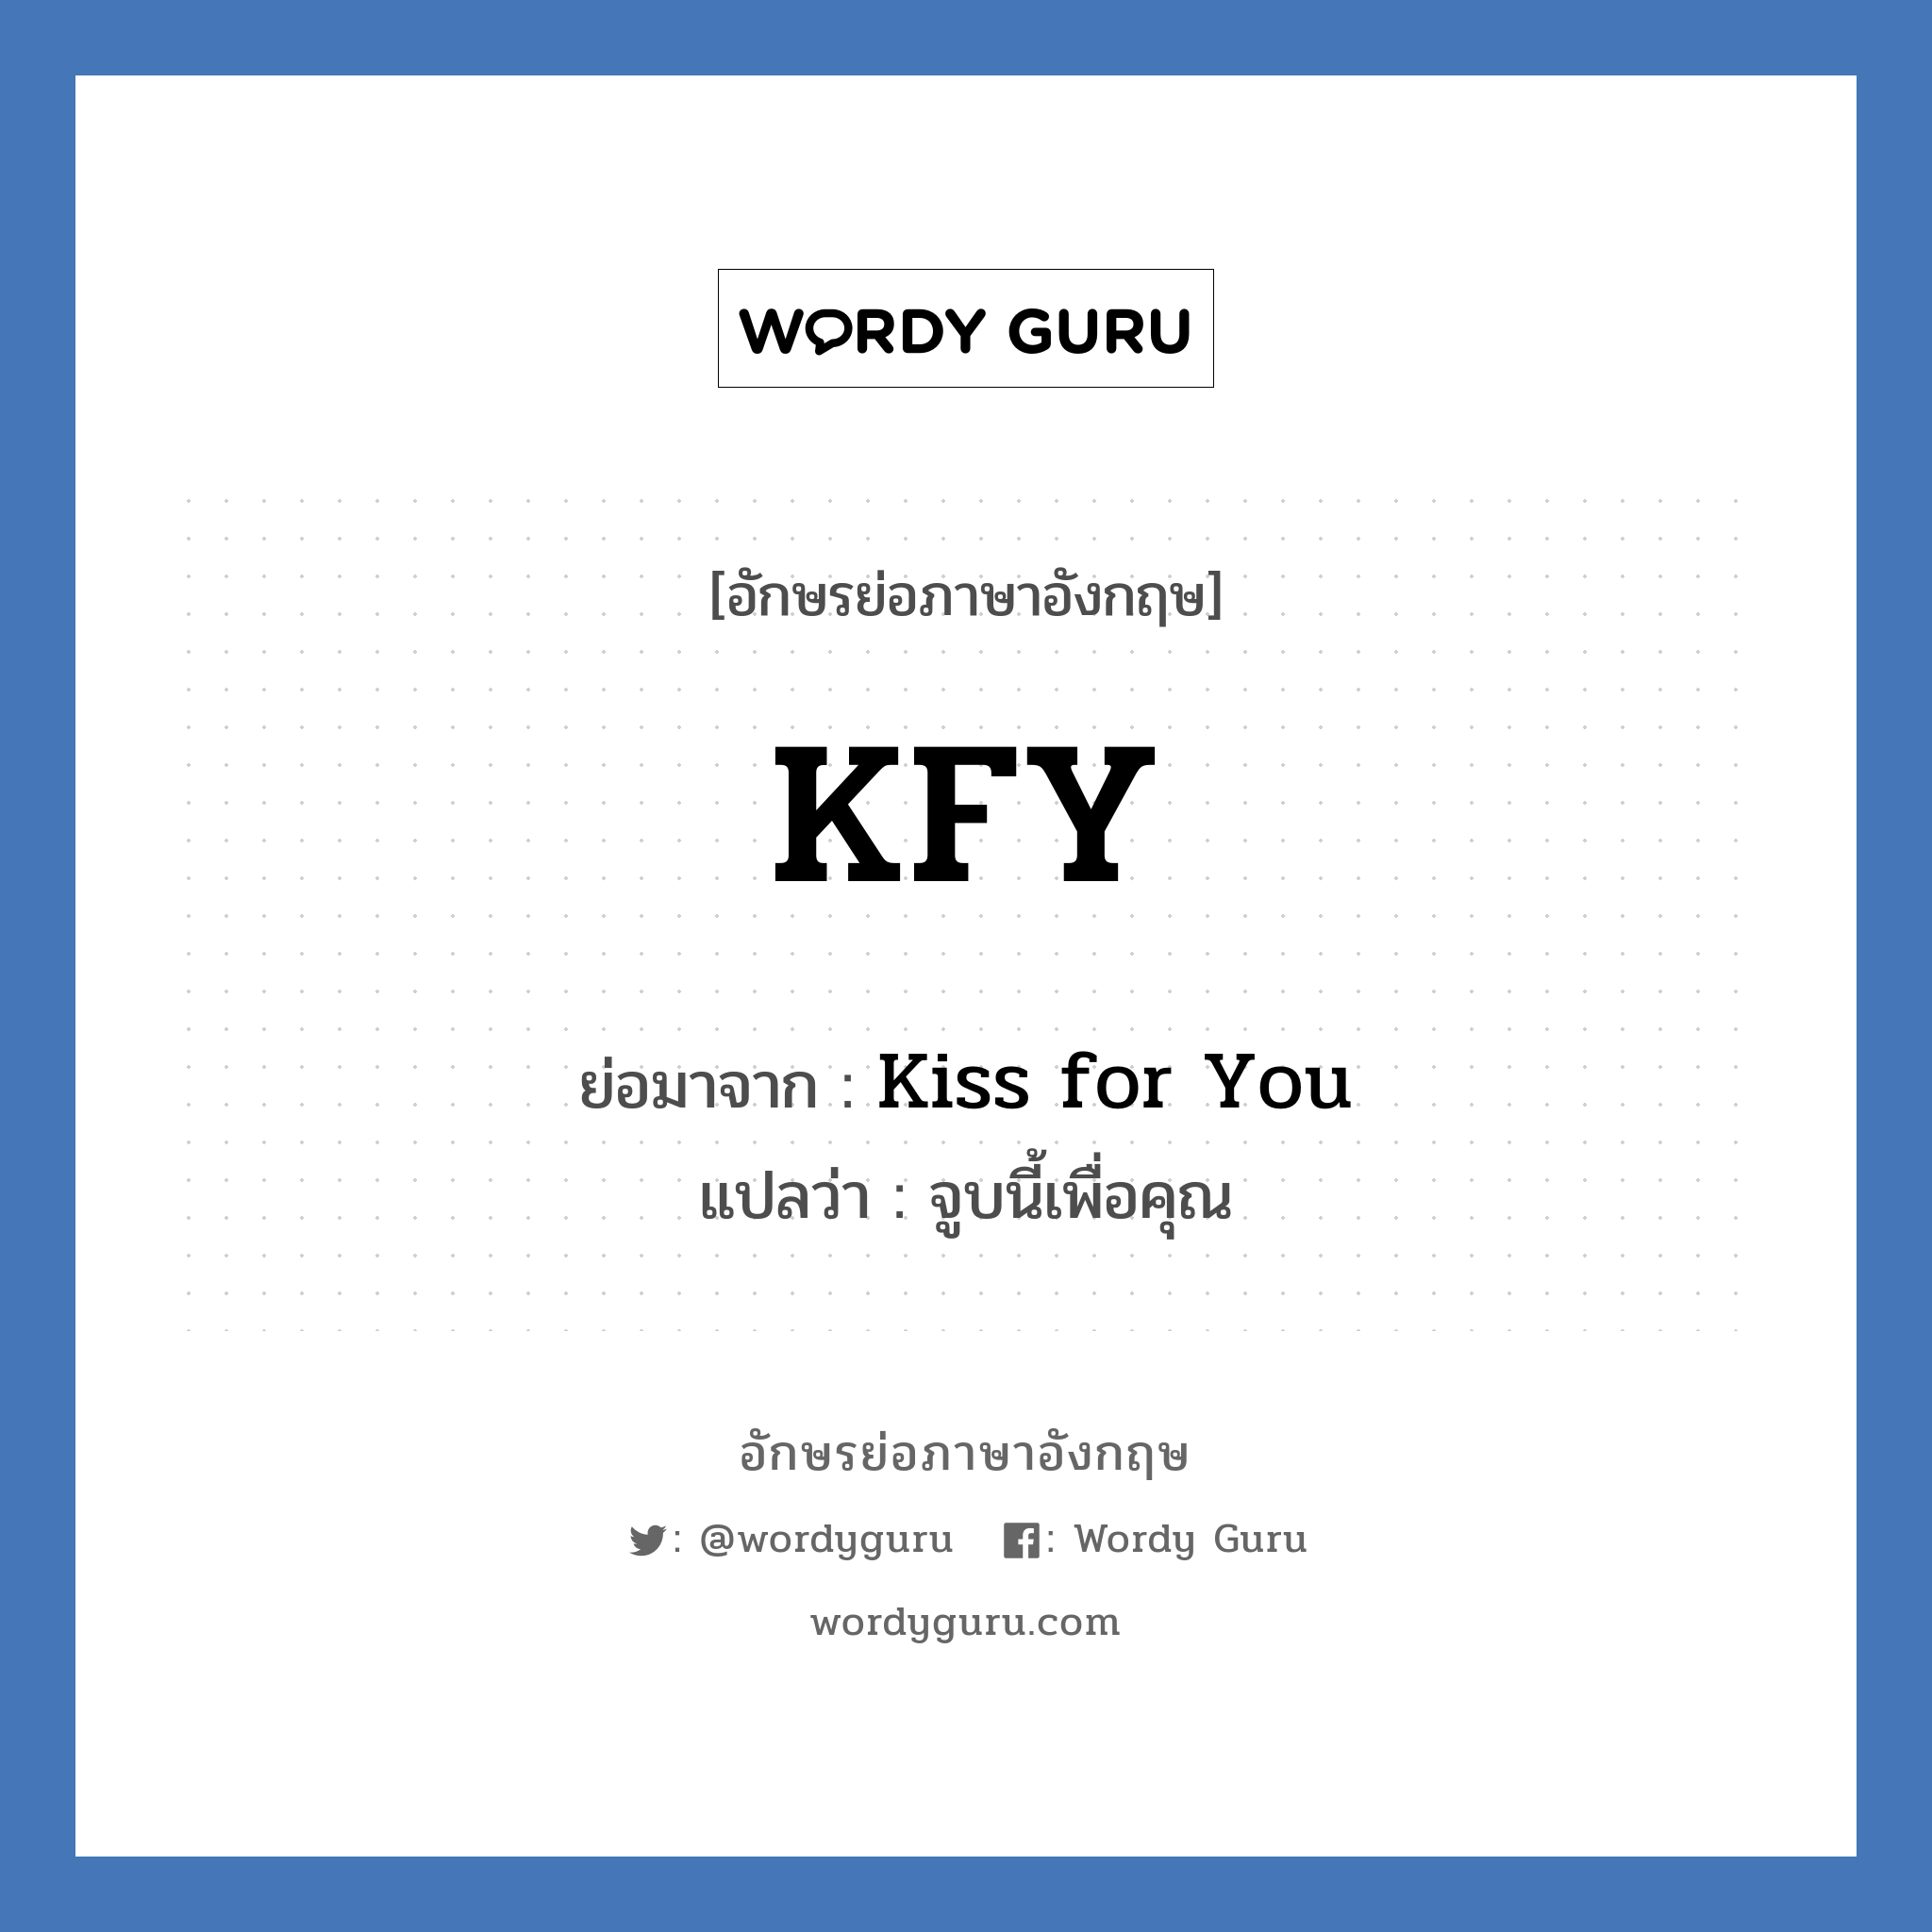 KFY ย่อมาจาก? แปลว่า?, อักษรย่อภาษาอังกฤษ KFY ย่อมาจาก Kiss for You แปลว่า จูบนี้เพื่อคุณ